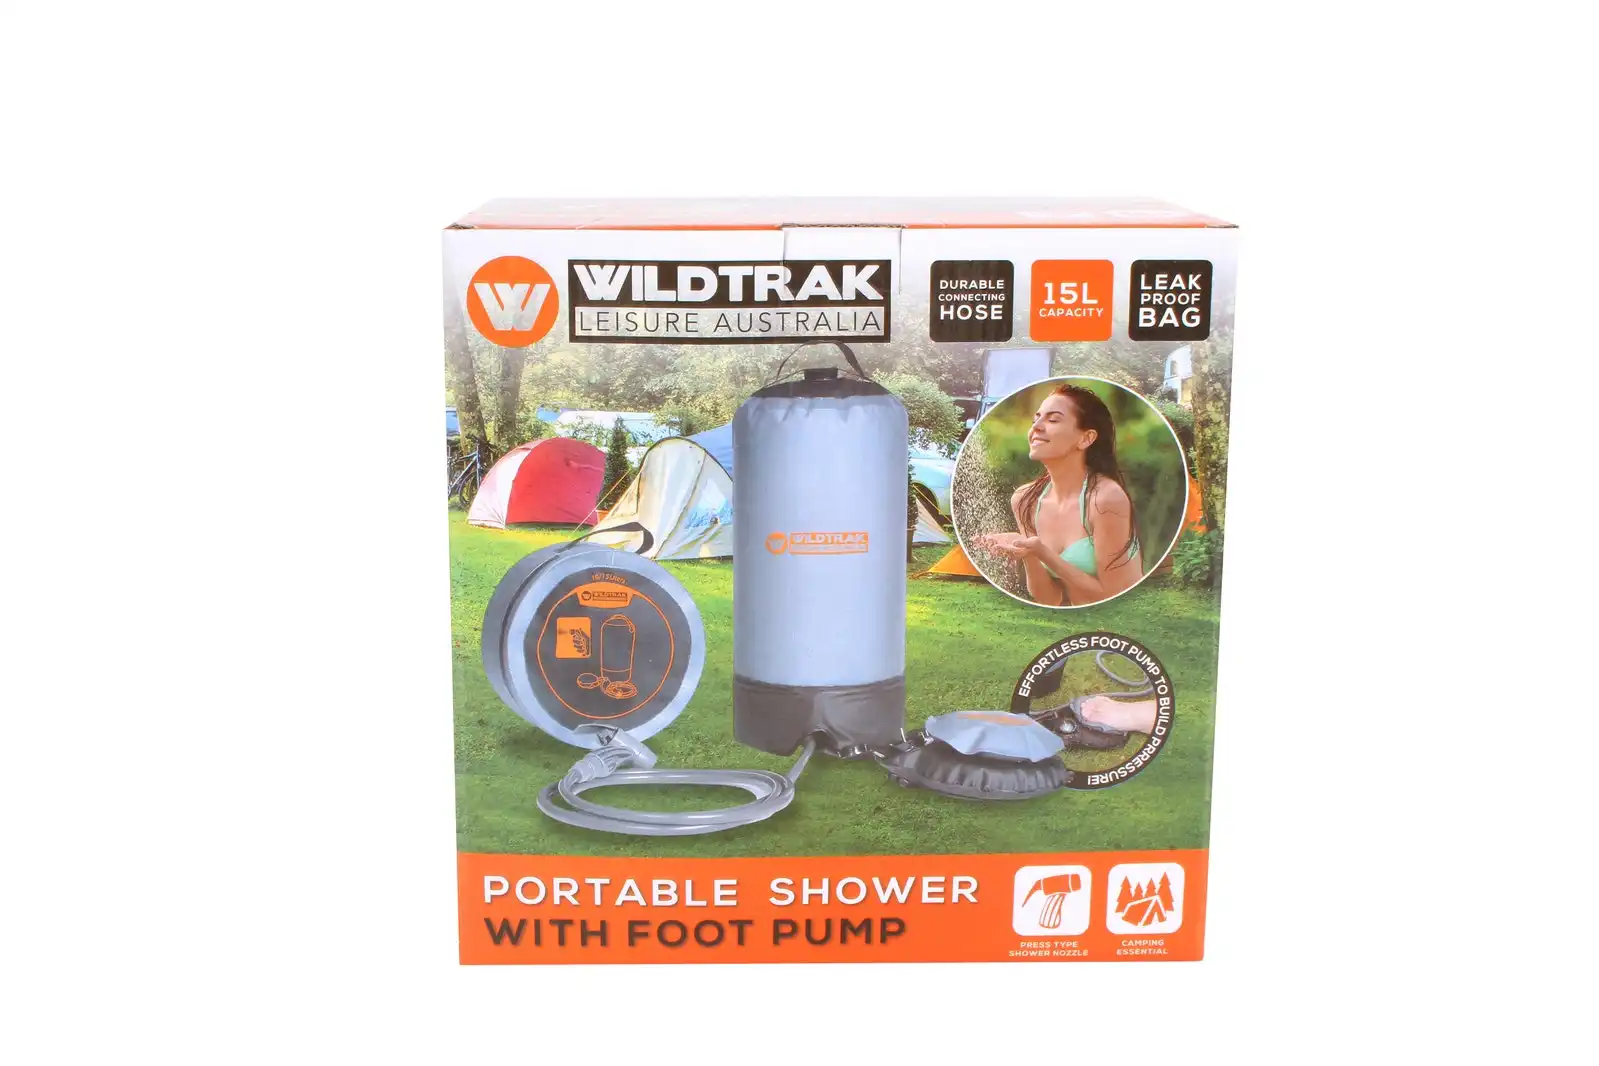 Wildtrak Heavy-Duty 15L Portable Shower Bag w/ Foot Pump Outdoor Camping Grey